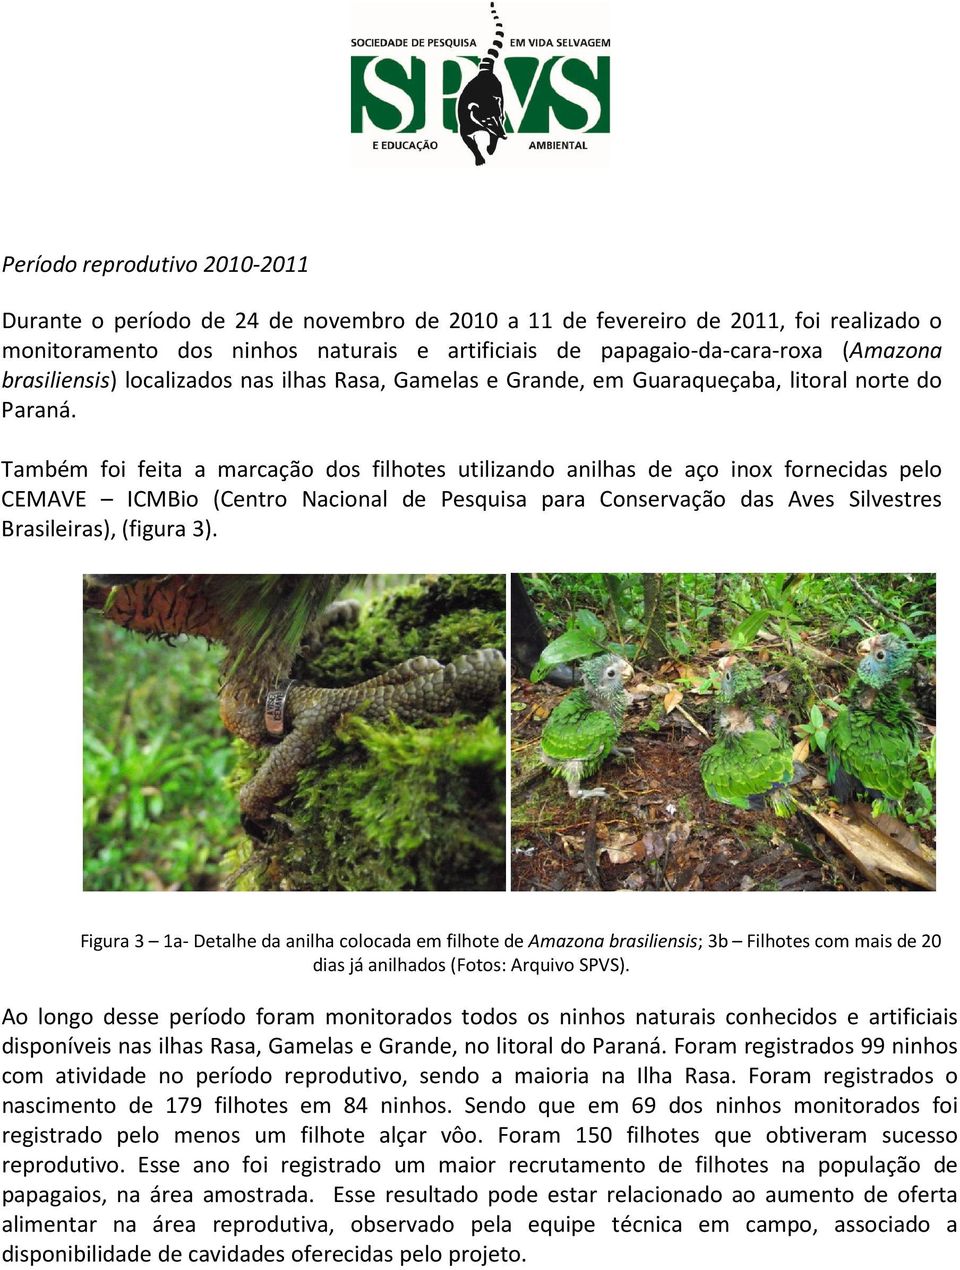 Também foi feita a marcação dos filhotes utilizando anilhas de aço inox fornecidas pelo CEMAVE ICMBio (Centro Nacional de Pesquisa para Conservação das Aves Silvestres Brasileiras), (figura 3).